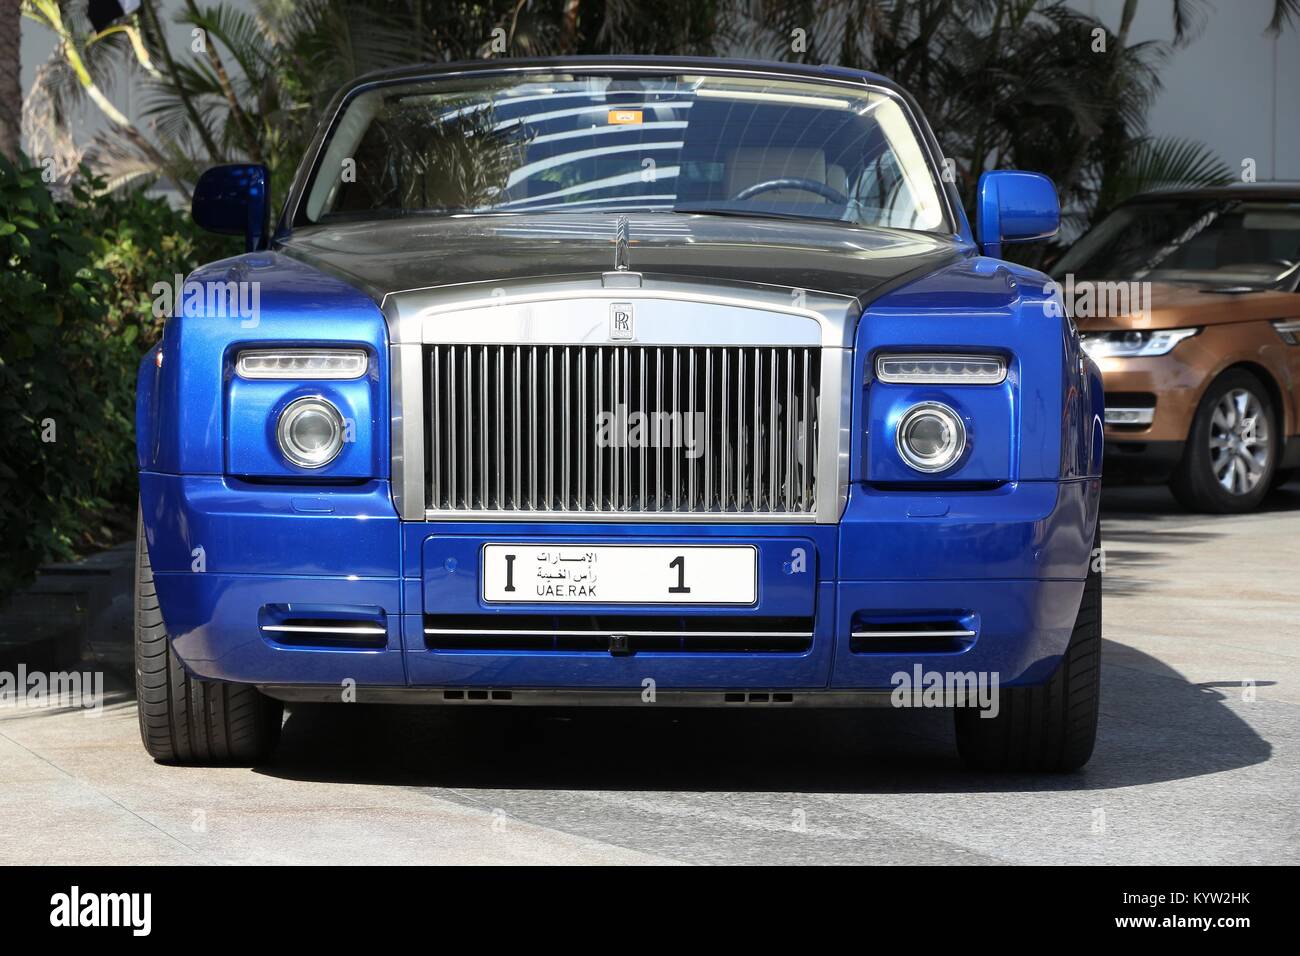 Dubaï, Émirats arabes unis - le 23 novembre 2017 : Rolls Royce avec Ras Al  Khaimah n° de la plaque d'immatriculation 1 stationné à Dubaï. La plaque a  été vendue aux enchères